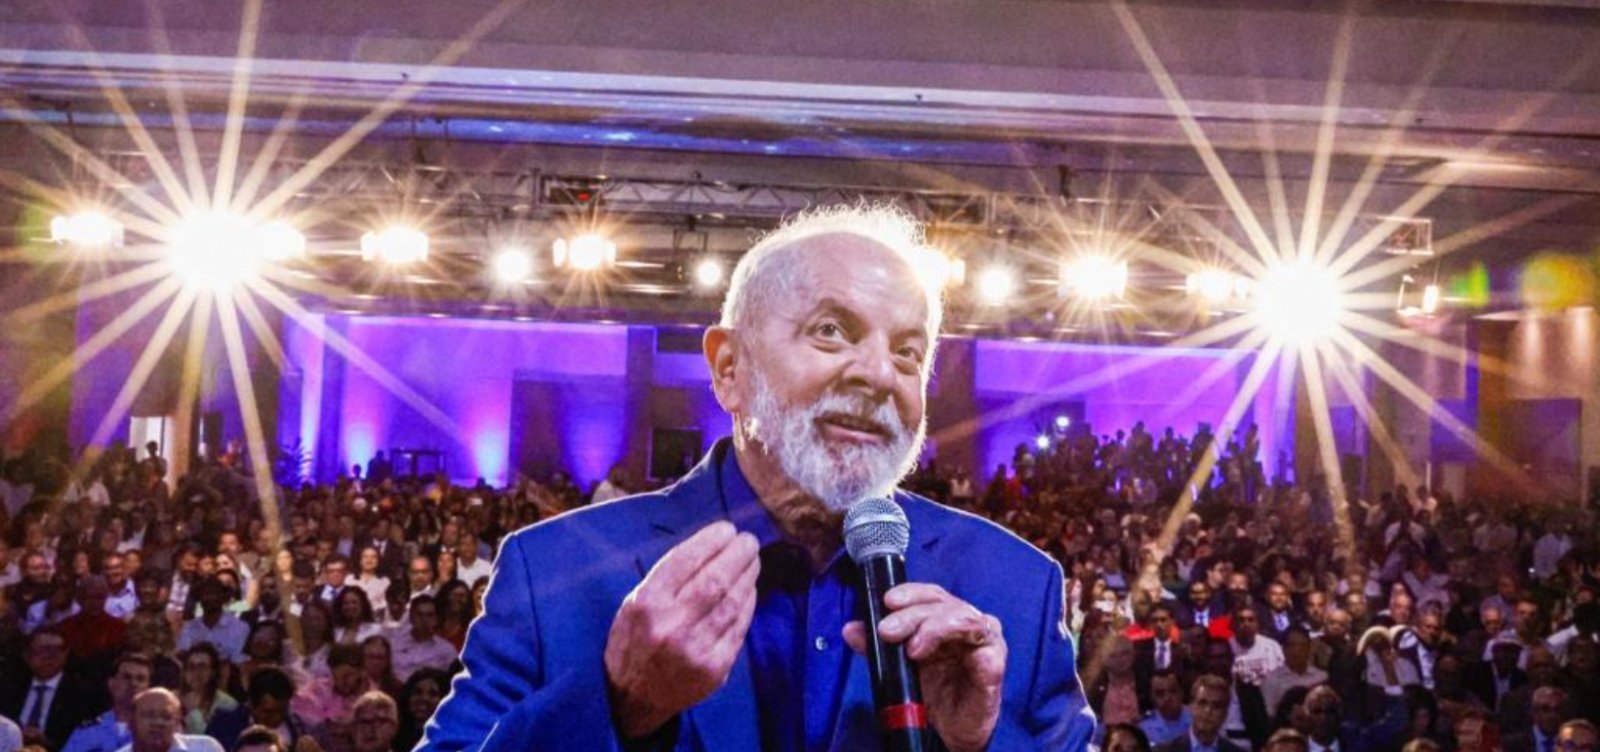 "Elite brasileira nunca teve intenção de educar povo", afirma Lula durante discurso em Salvador